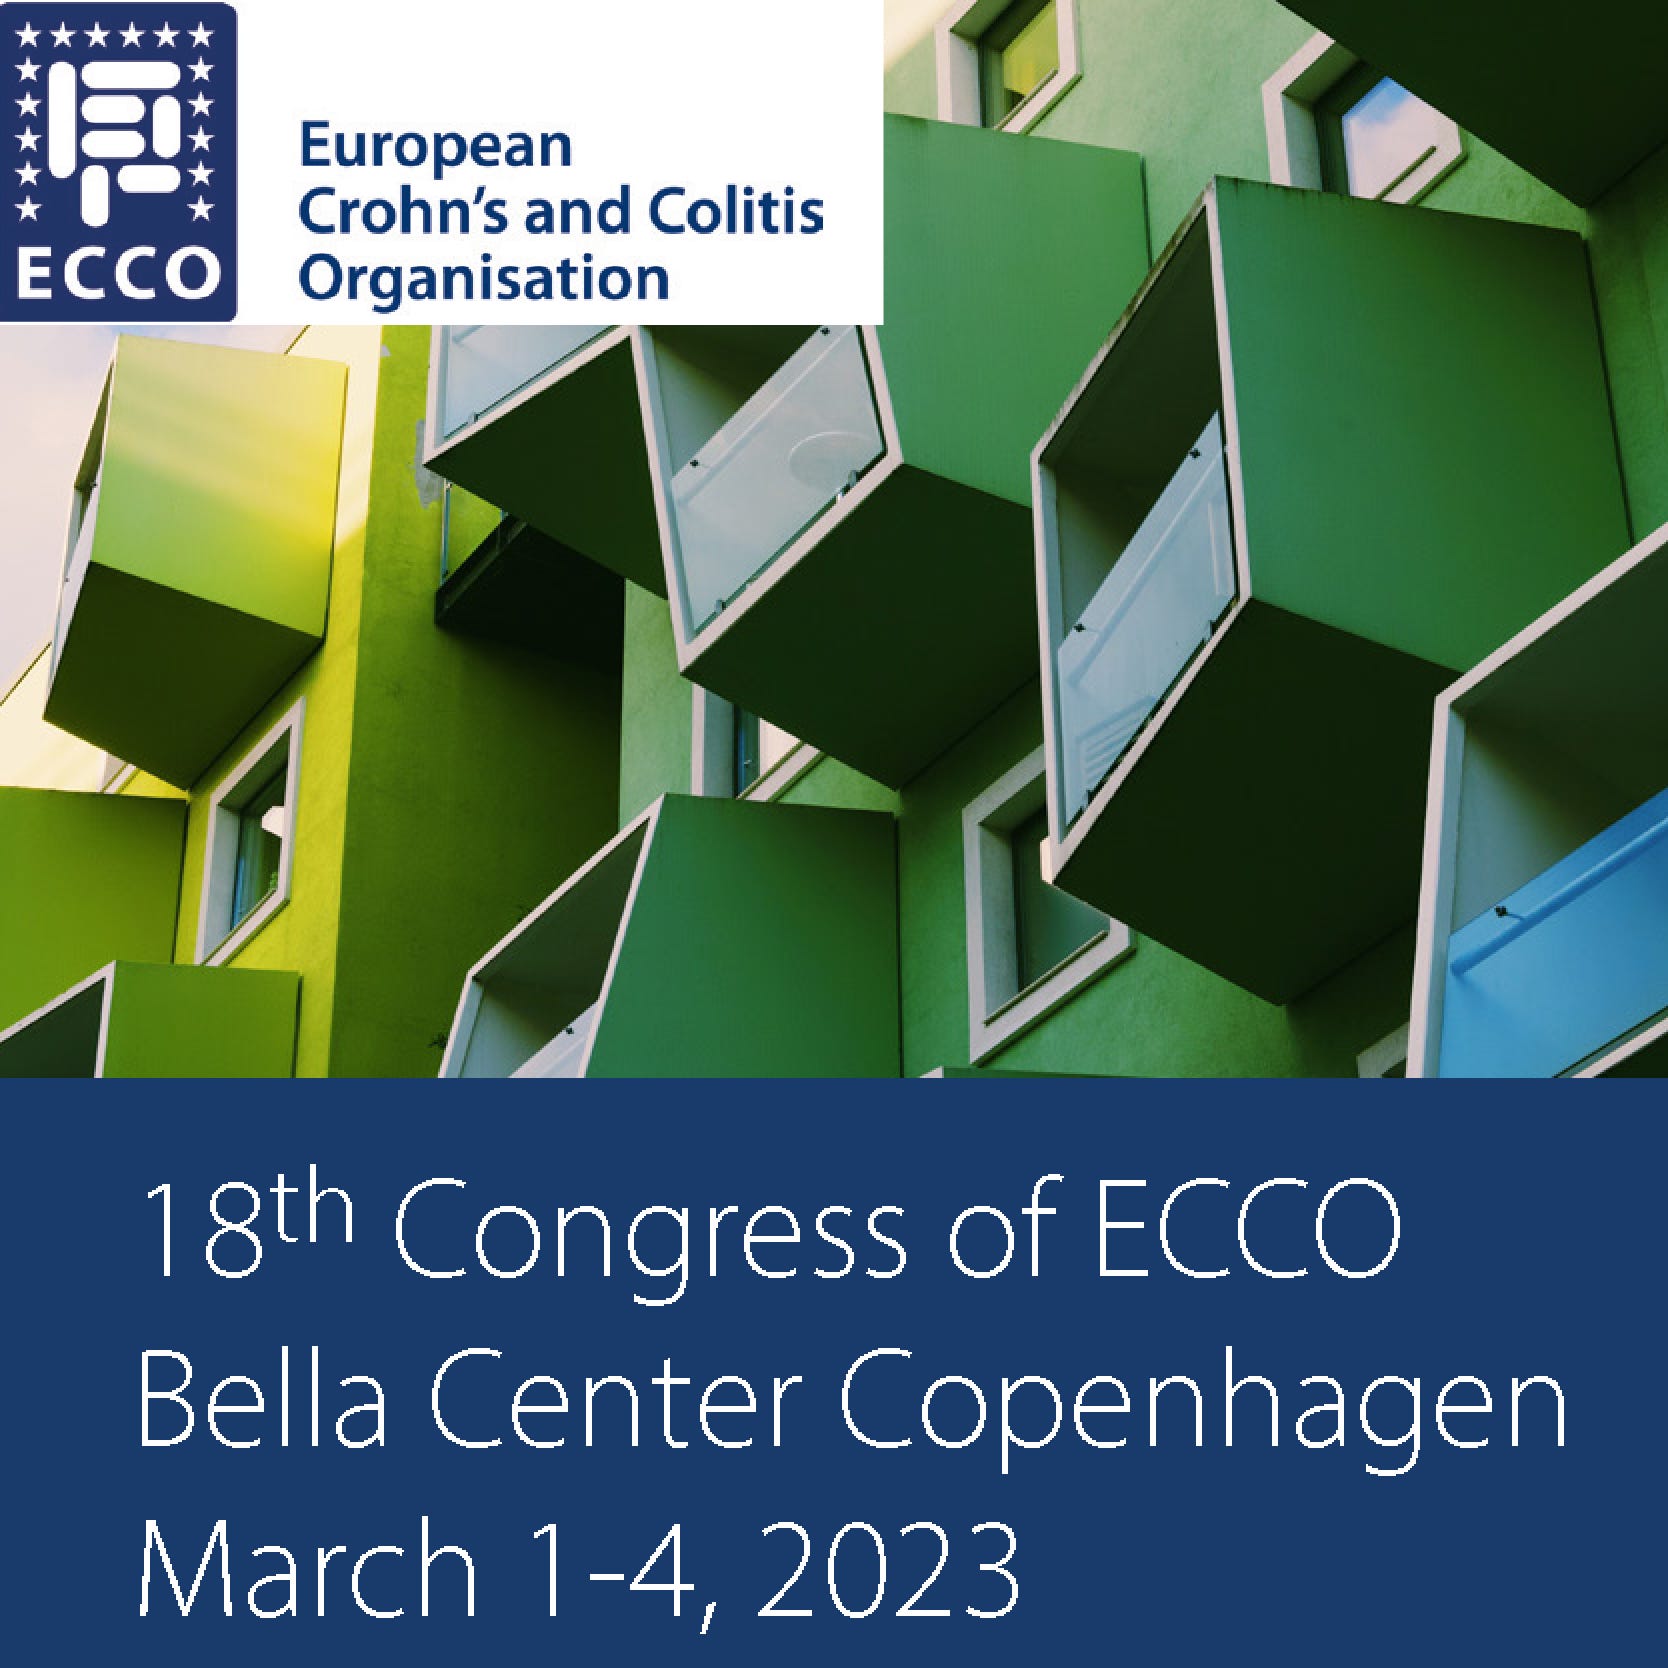 Previewing the ECCO Congress 2023 part 1